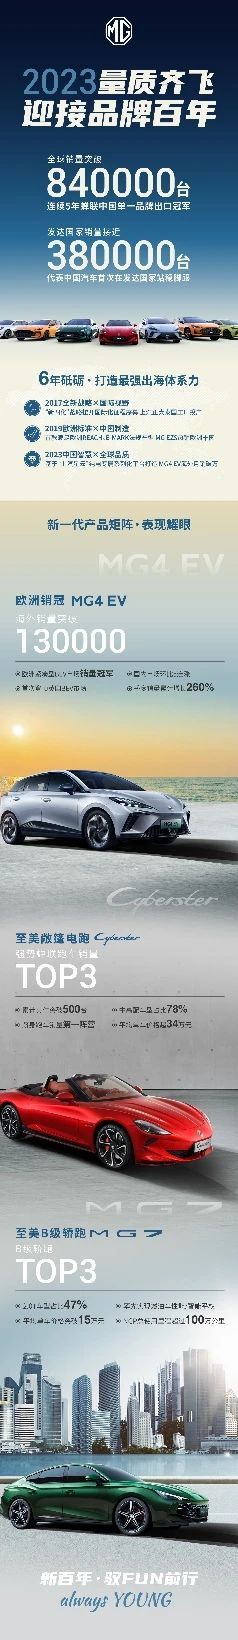 MG品牌连续第五年蝉联“中国汽车单一品牌出口冠军” 2024年冲击百万销量目标